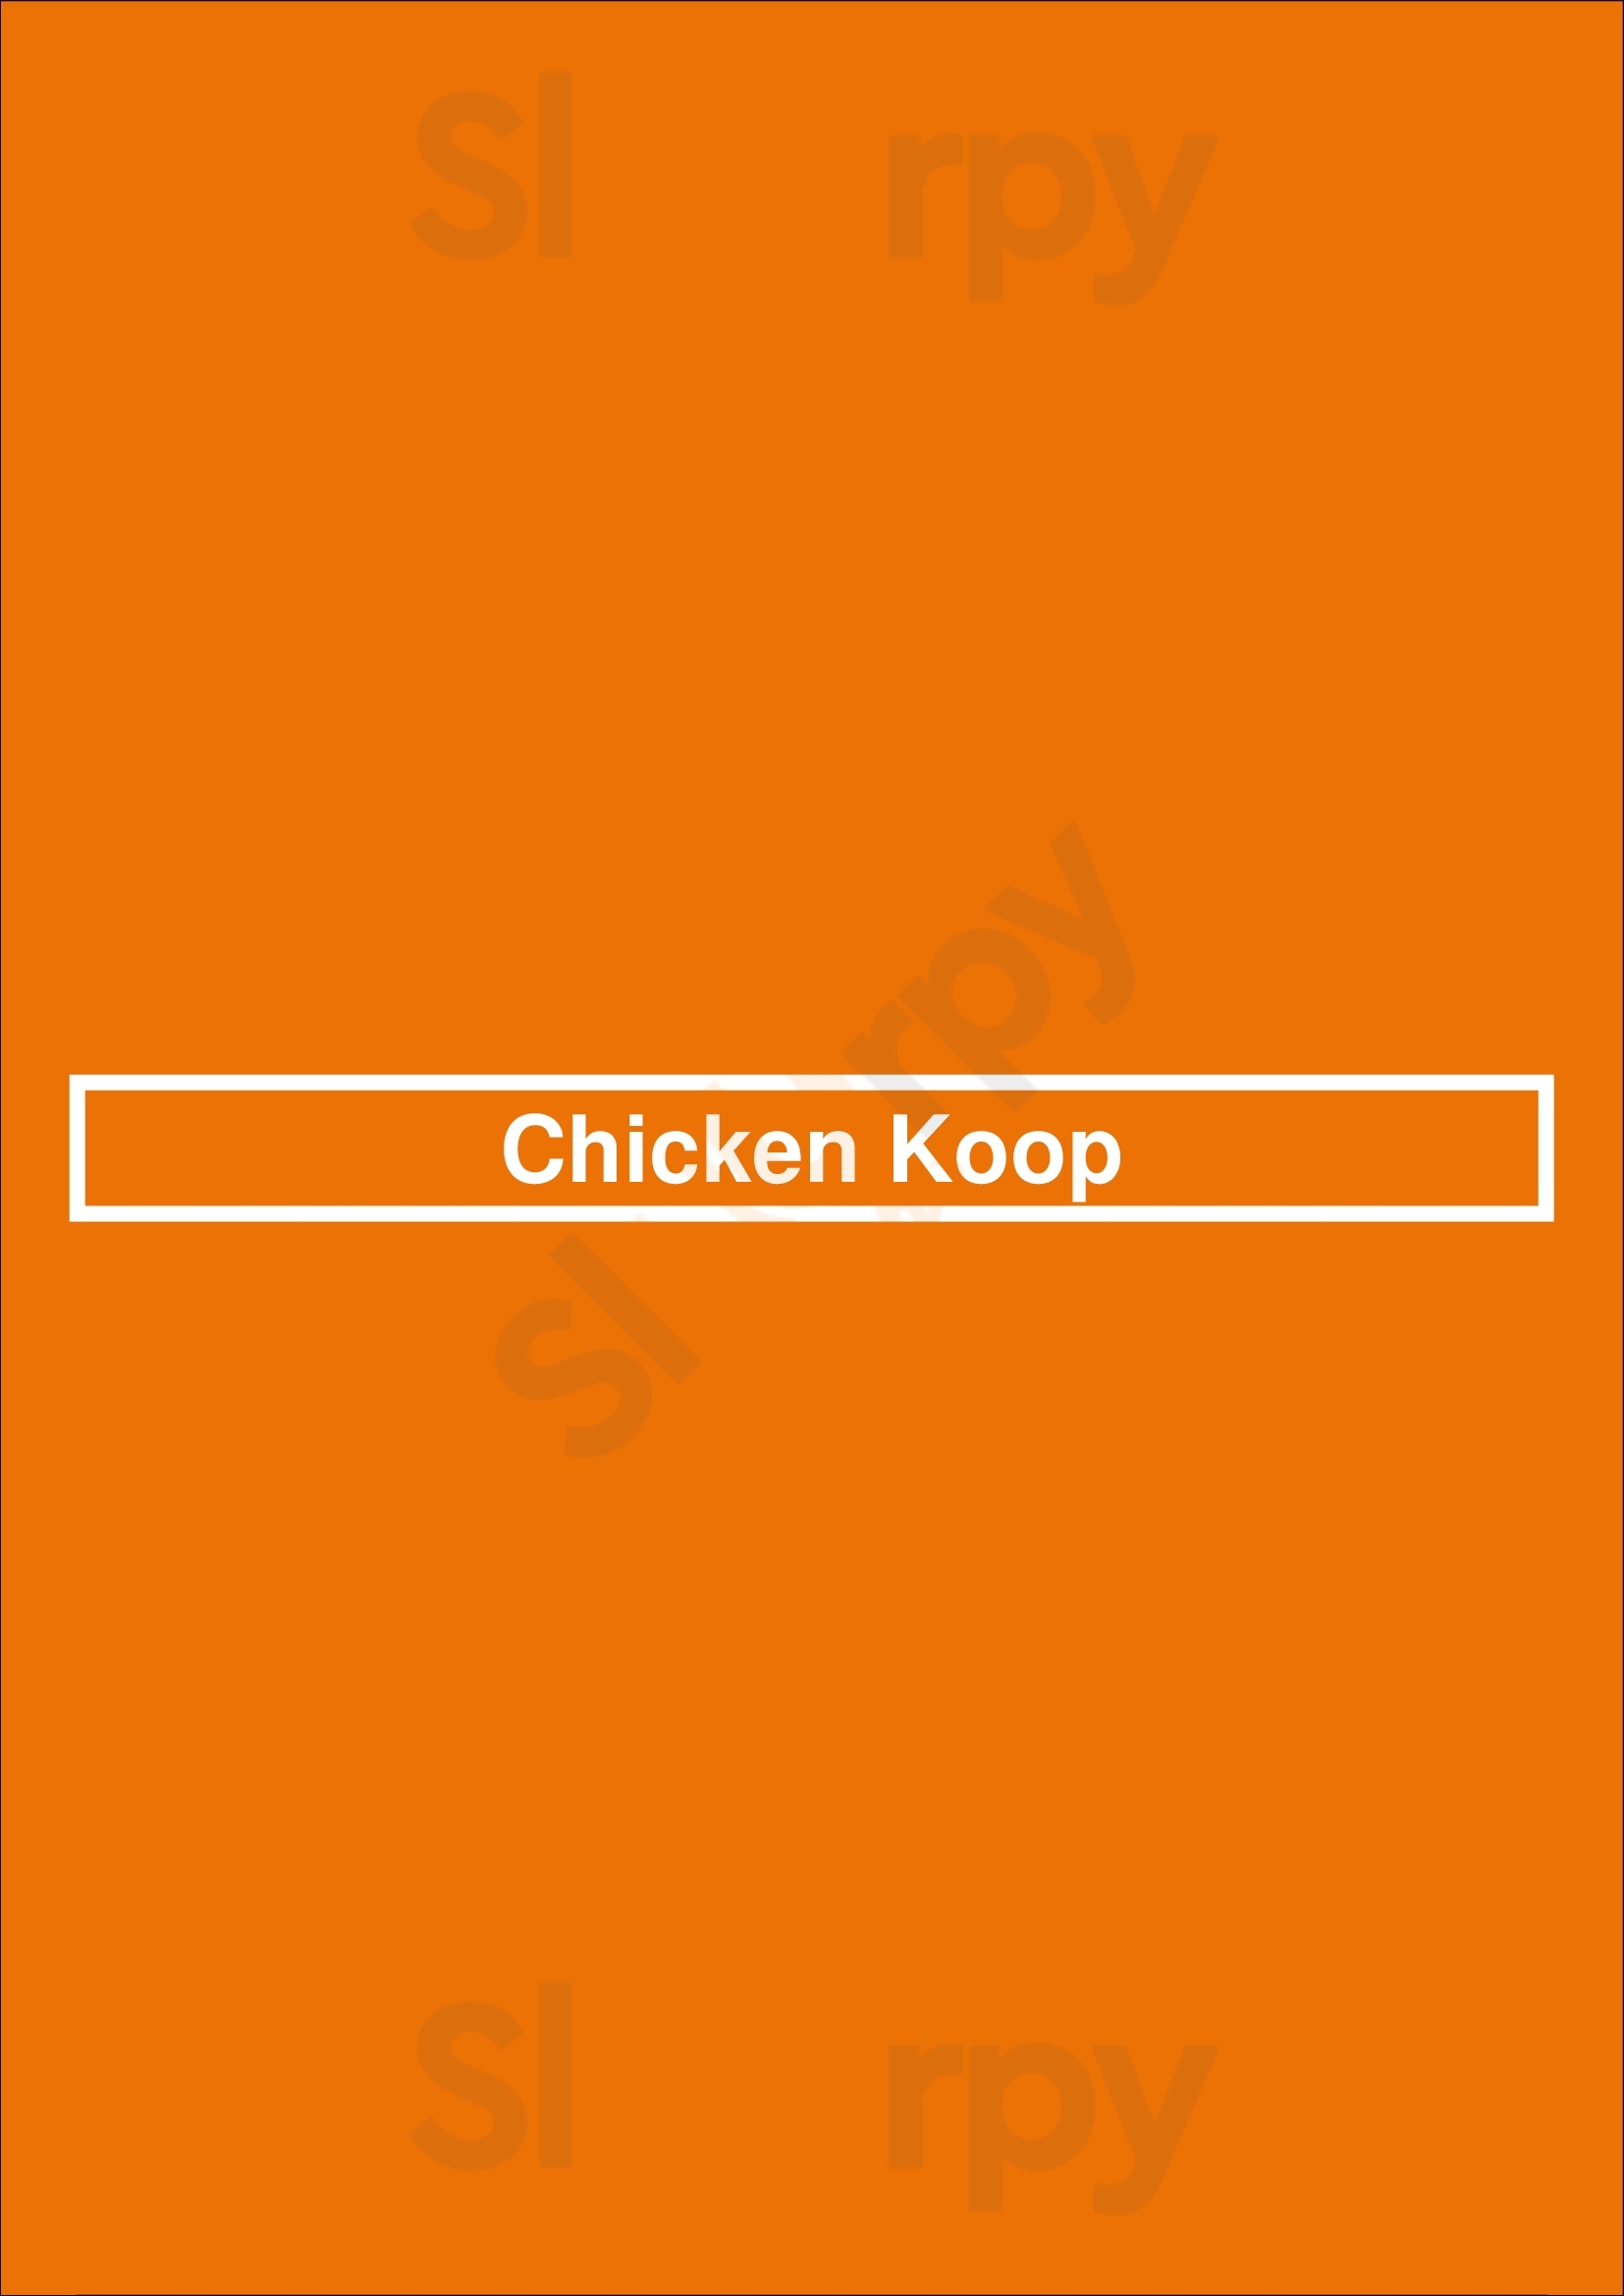 The Chicken Koop Whittier Menu - 1